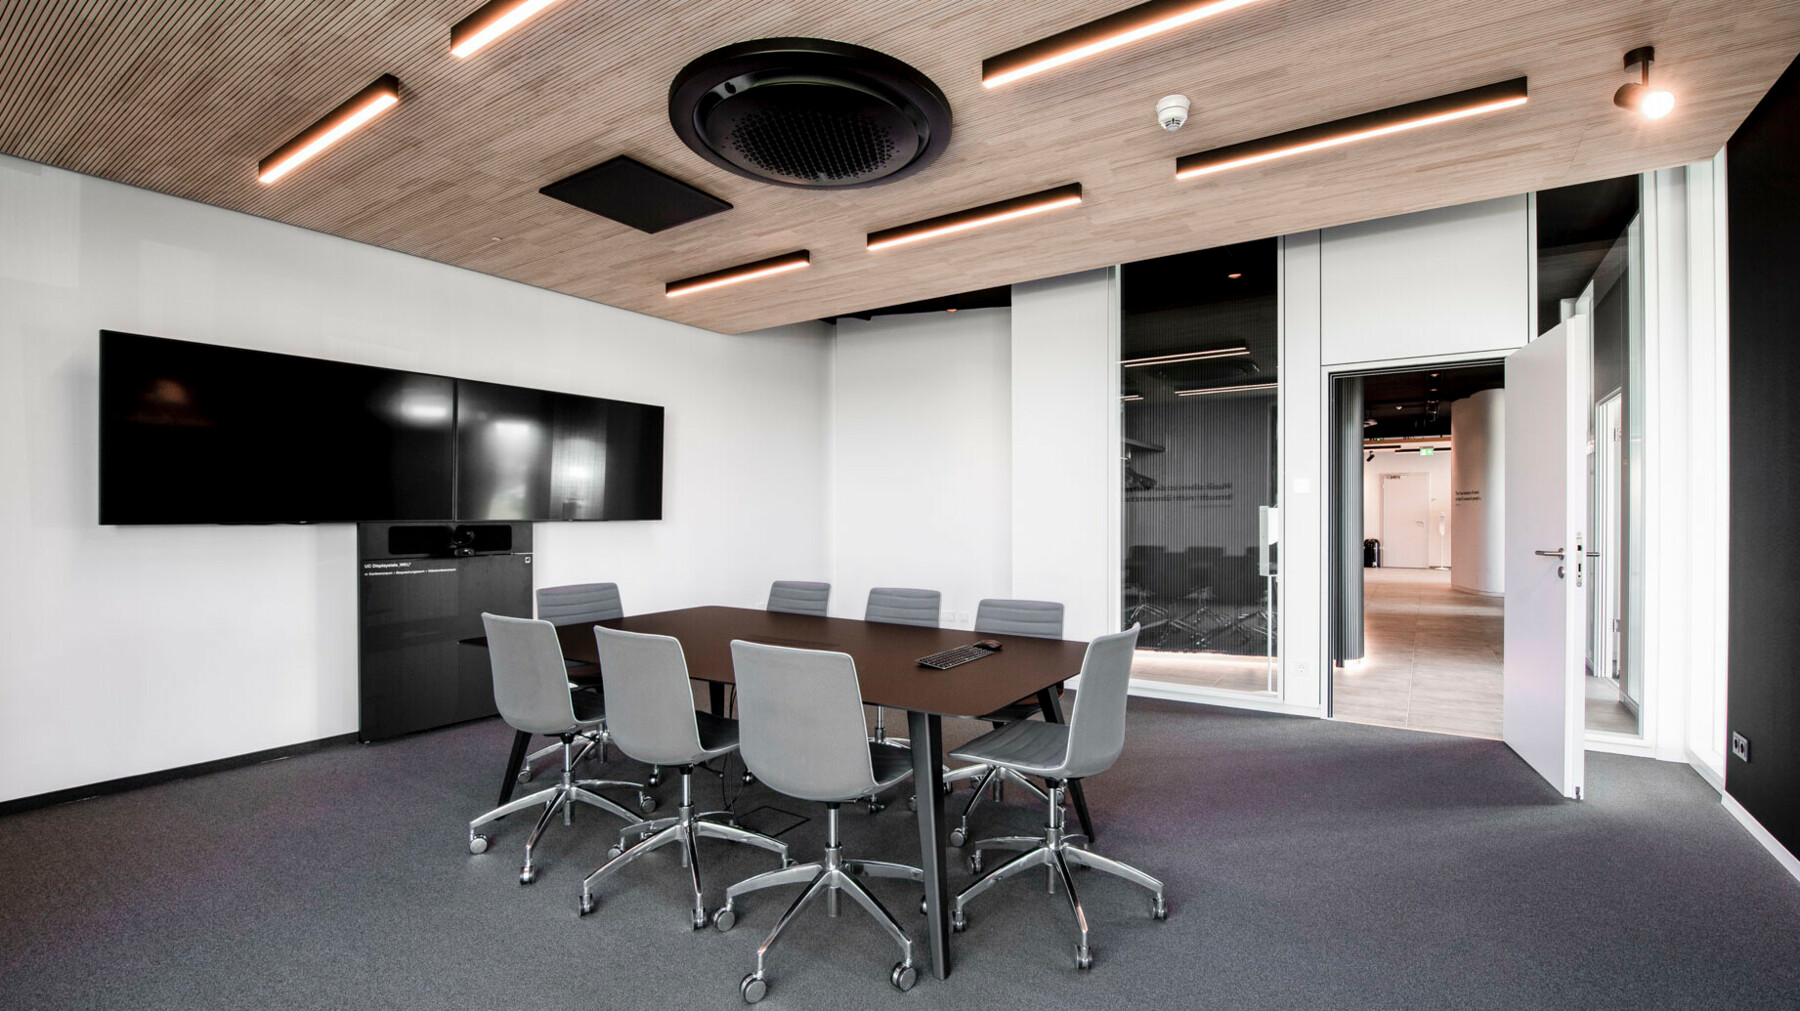 Der Sitzungsraum wird dominiert von klaren Linien und Kontrasten von hell und dunkel. Zusammen mit der minimalistischen Einrichtung und der LIGNO® Akustikoptimierung entsteht so die perfekte Umgebung für konstruktive Sitzungen.